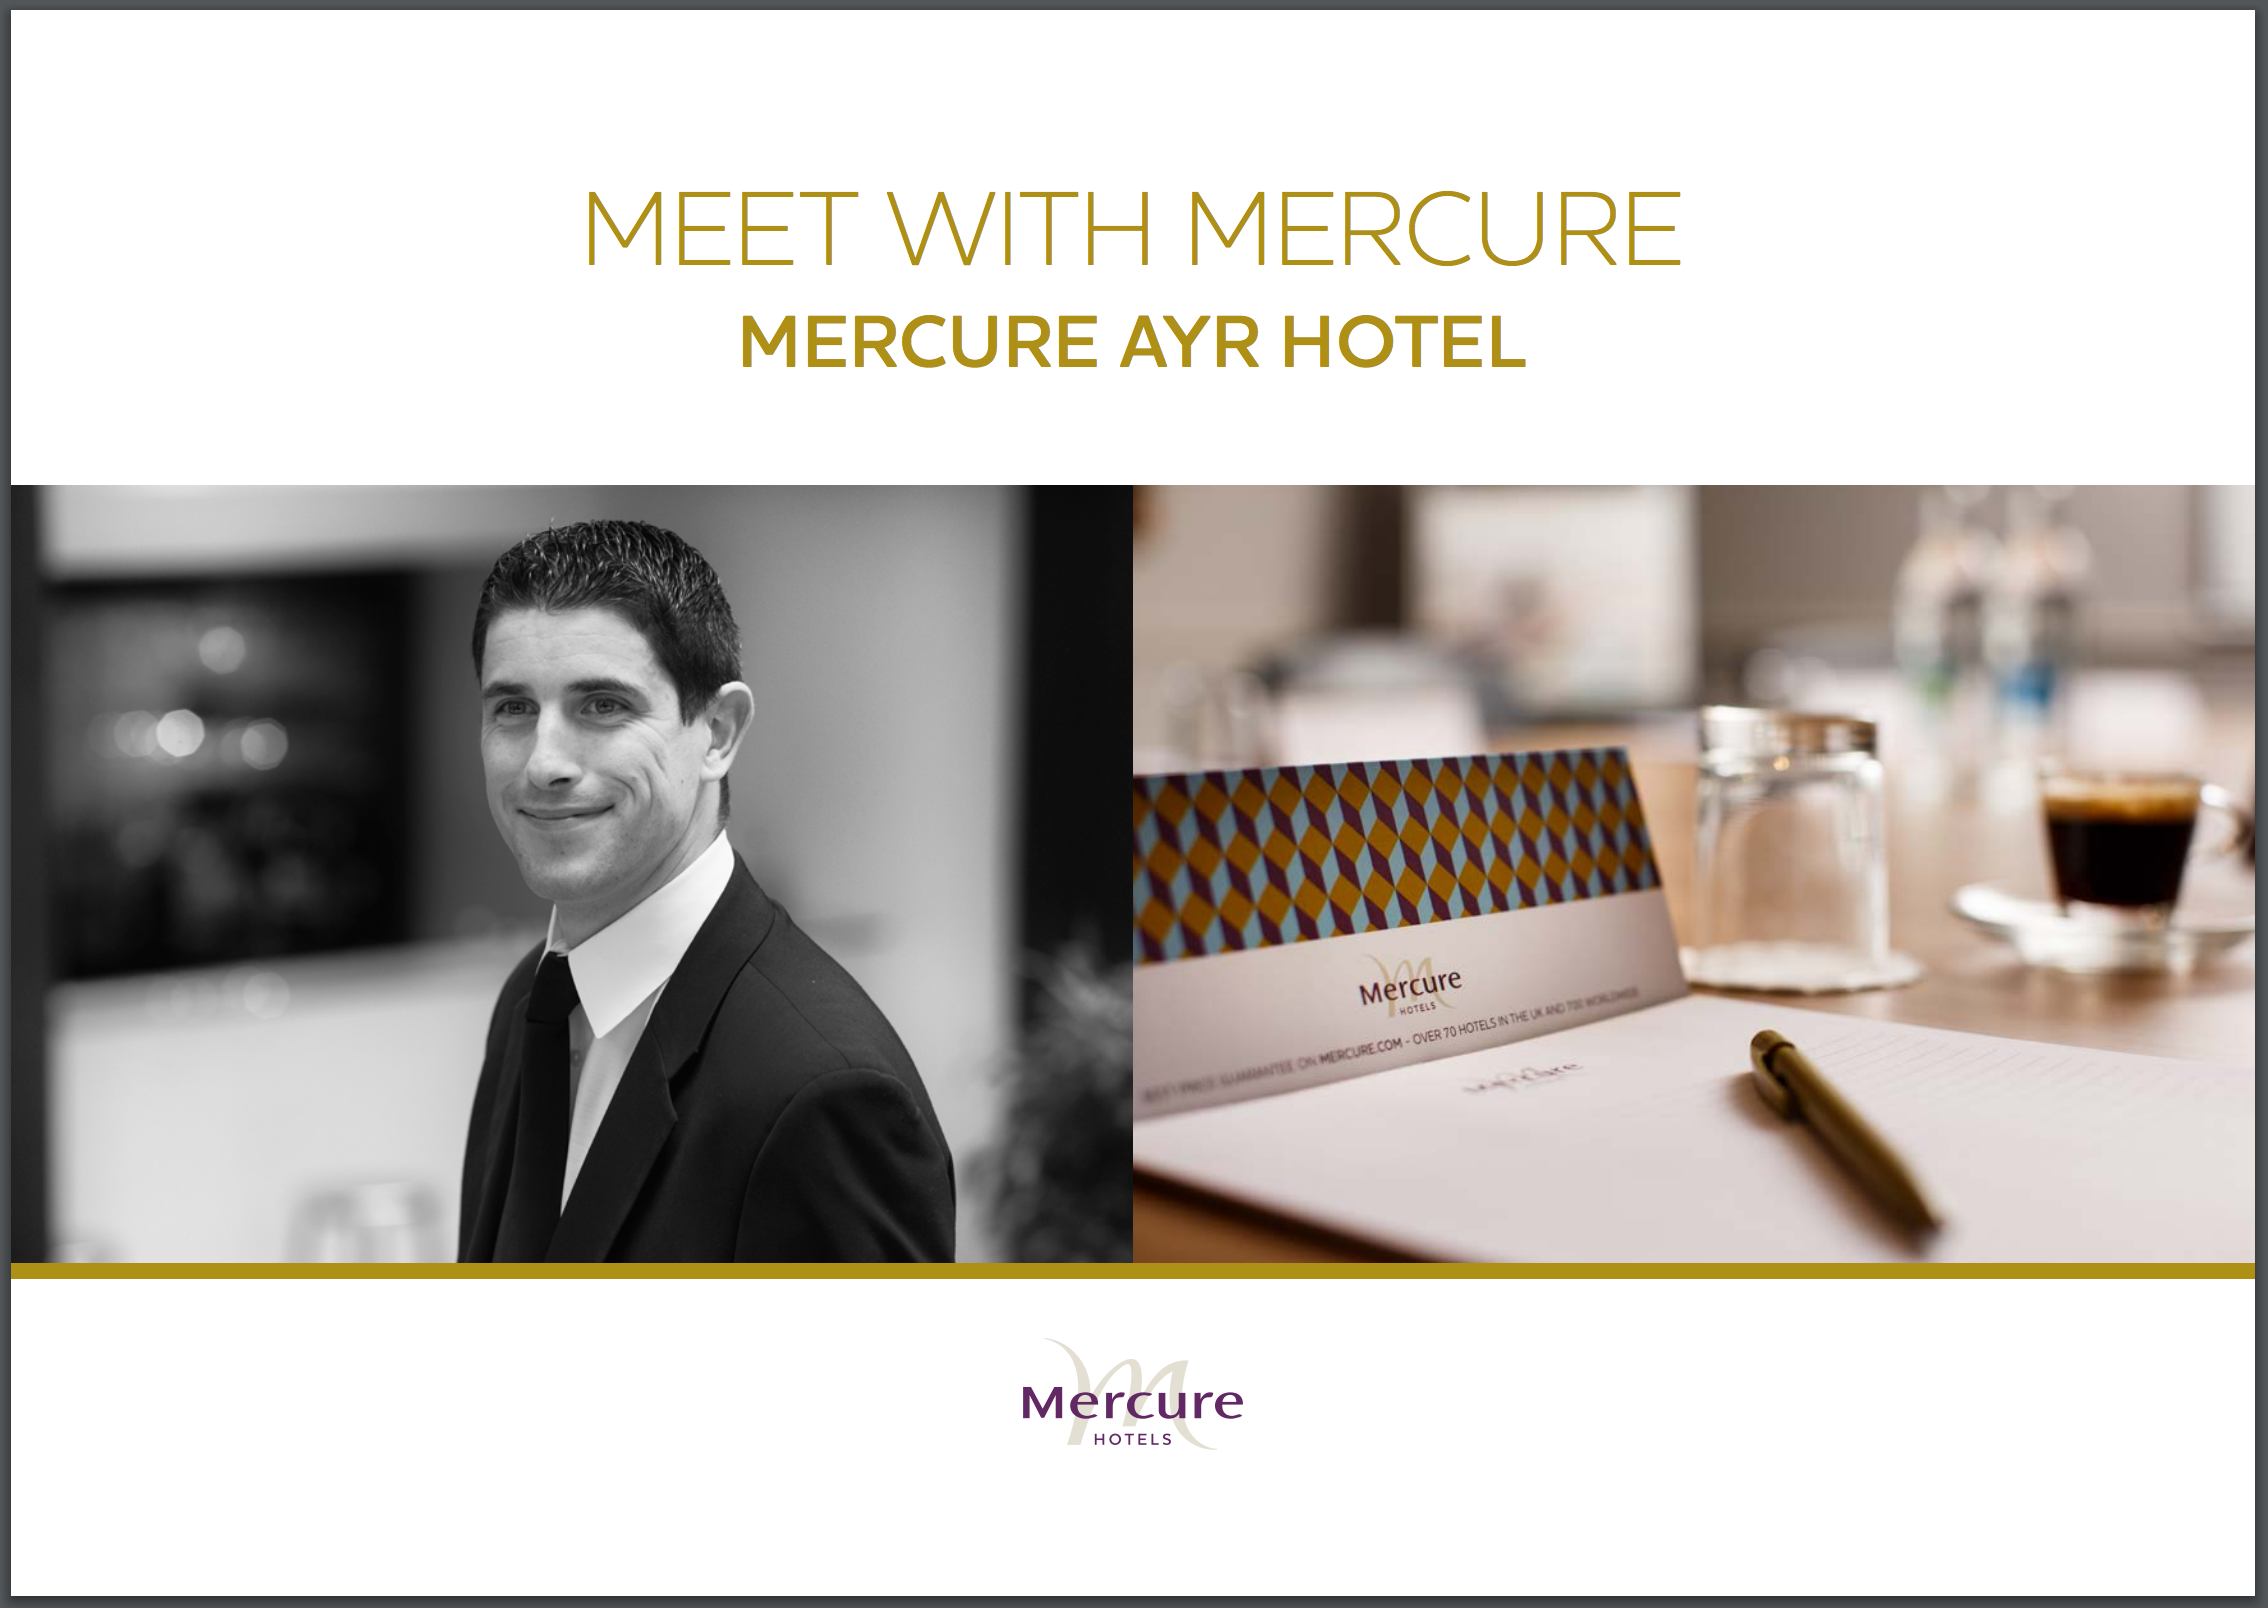 Mercure Ayr Hotel Meetings Brochure Cover